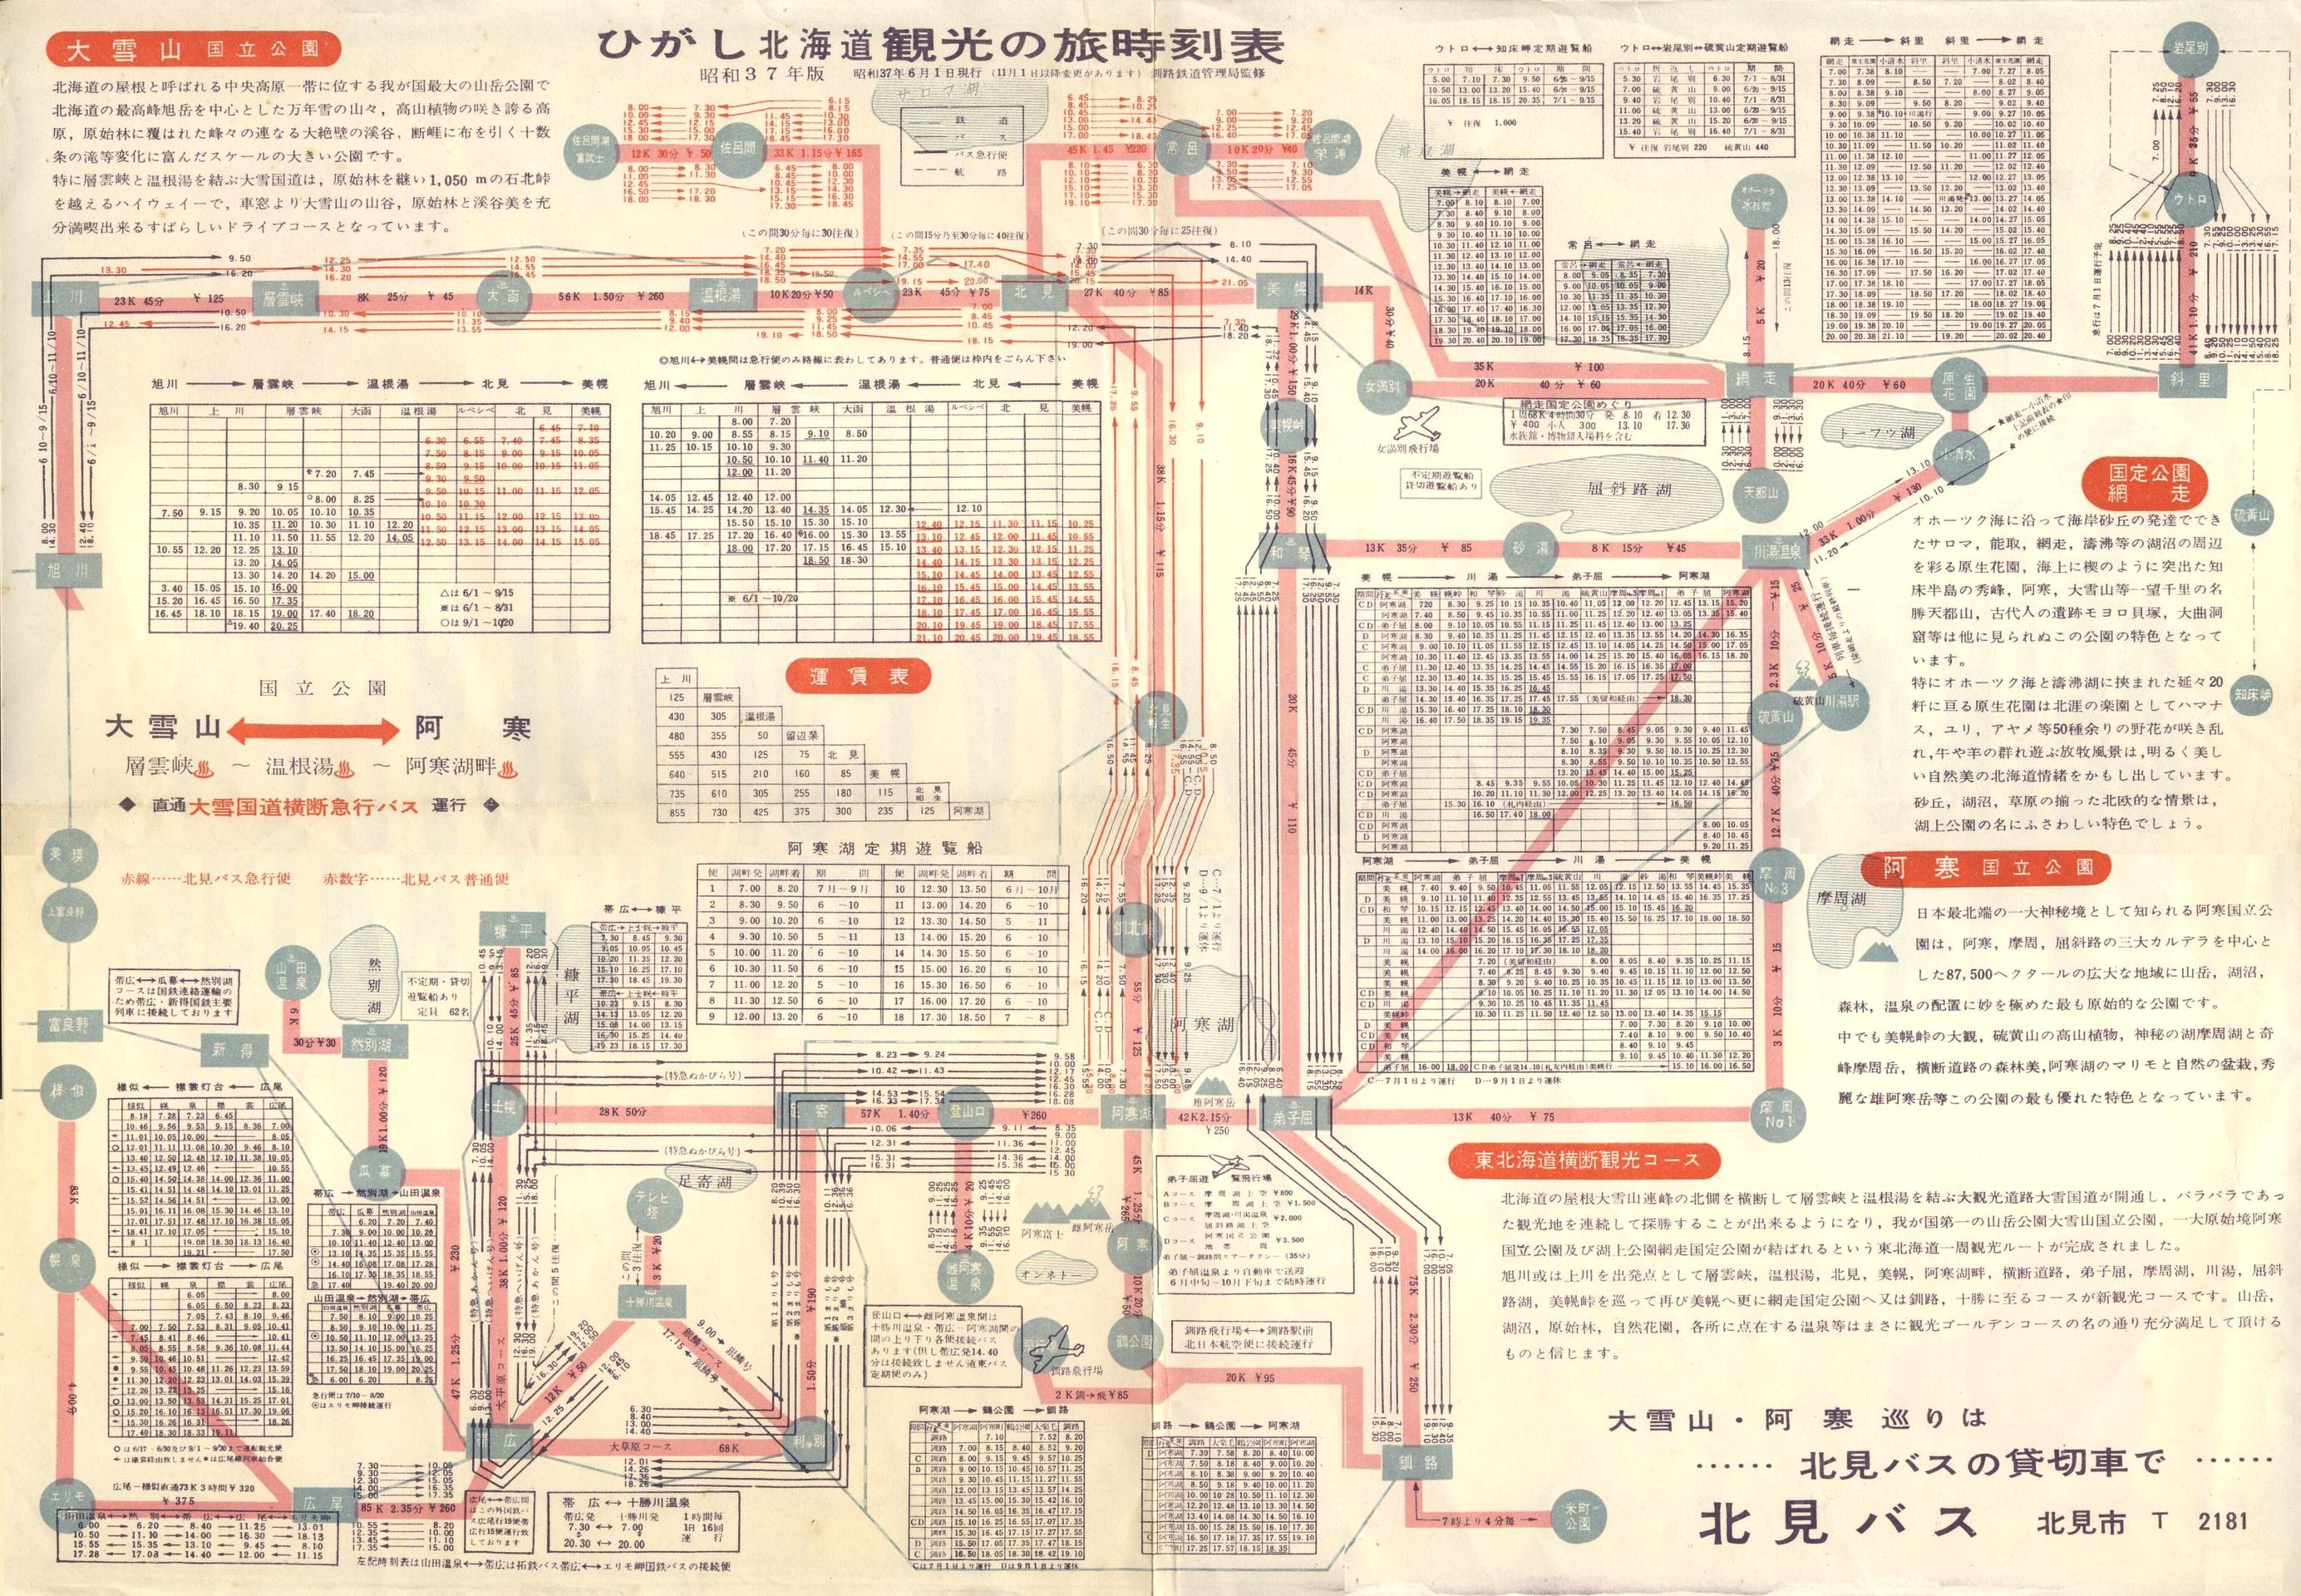 1962-06-01現行_国鉄釧路鉄道管理局監修_ひがし北海道観光の旅時刻表